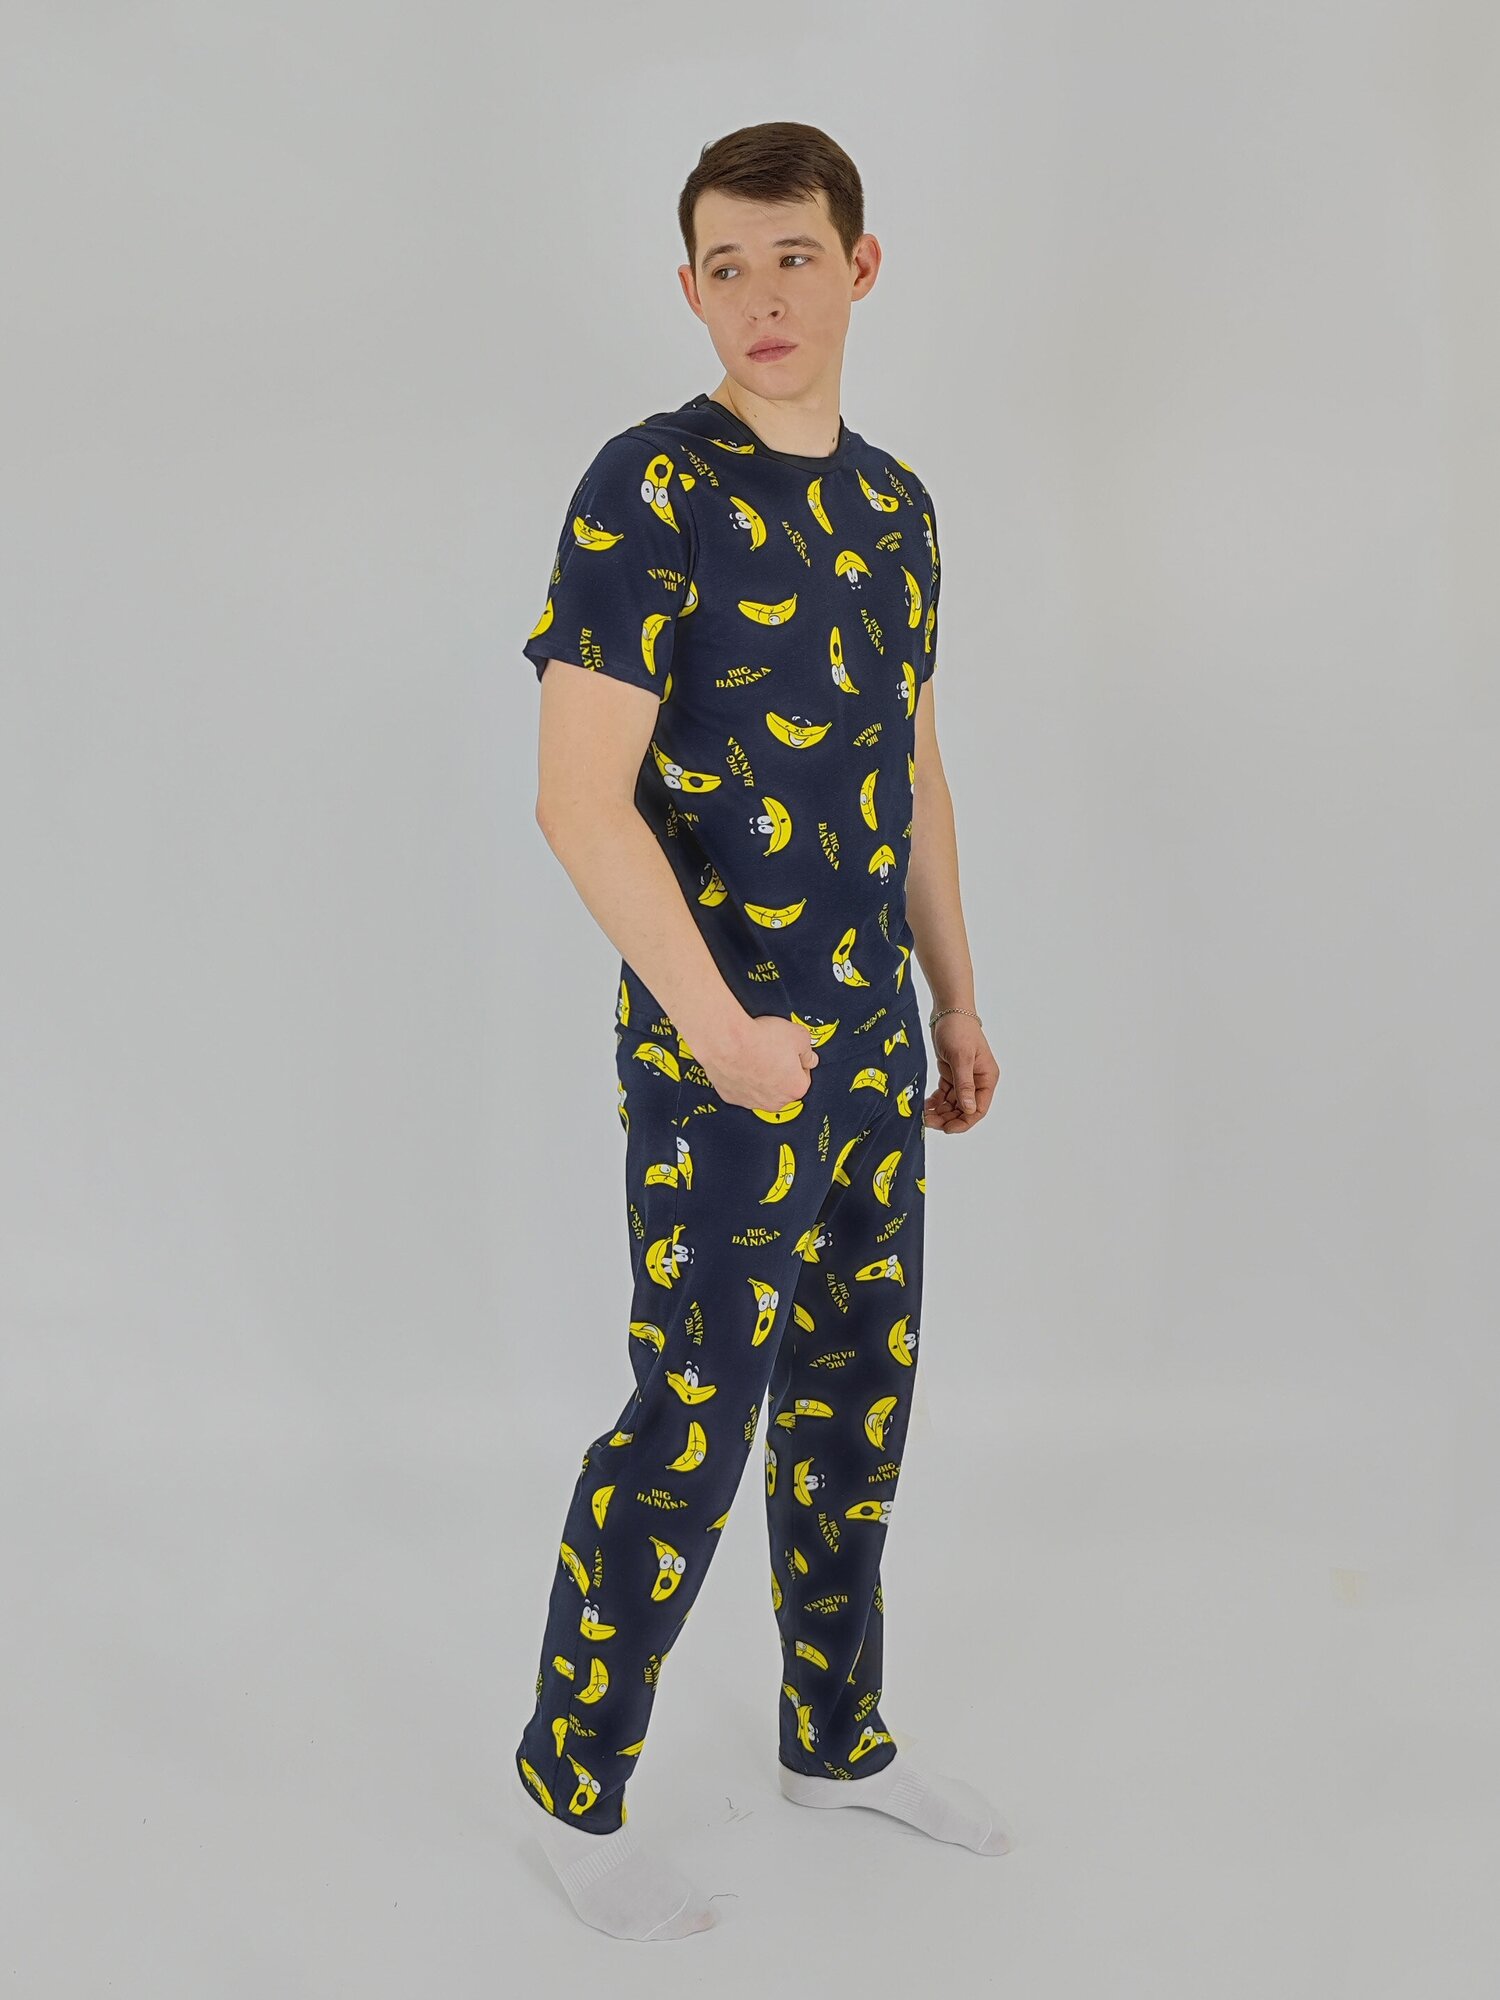 Мужская пижама, мужской пижамный комплект ARISTARHOV, Футболка + Брюки, Бананчик, синий желтый, размер 46 - фотография № 1